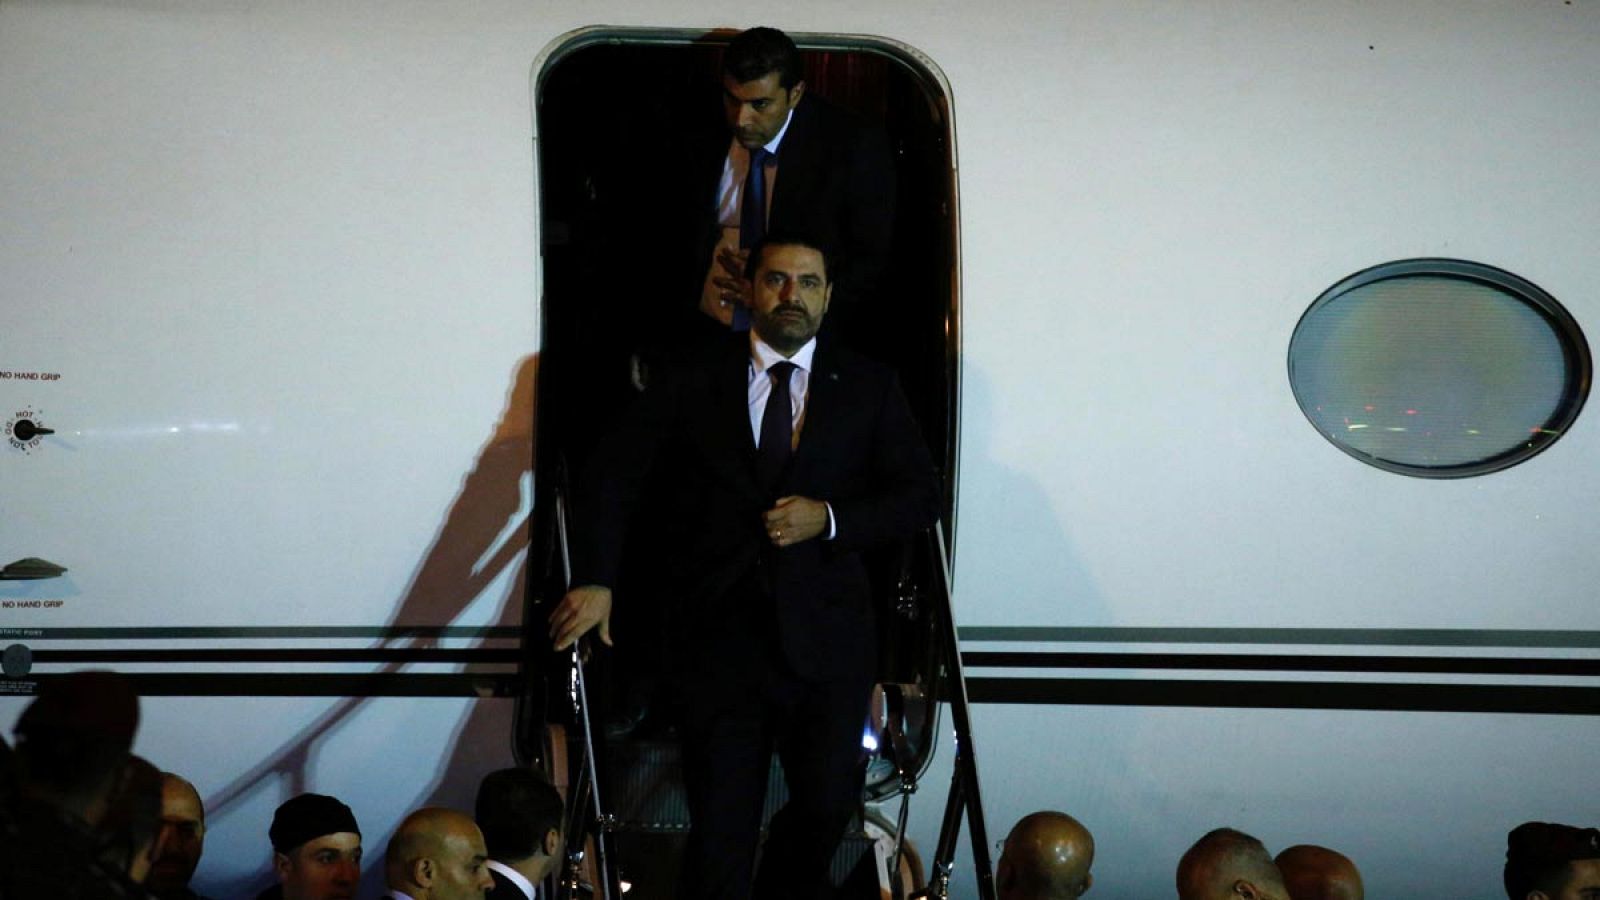 El primer ministro dimisionario de Líbano, Saad al-Hariri, desciende por las escalerillas del avión en el aeropuerto de Beirut.